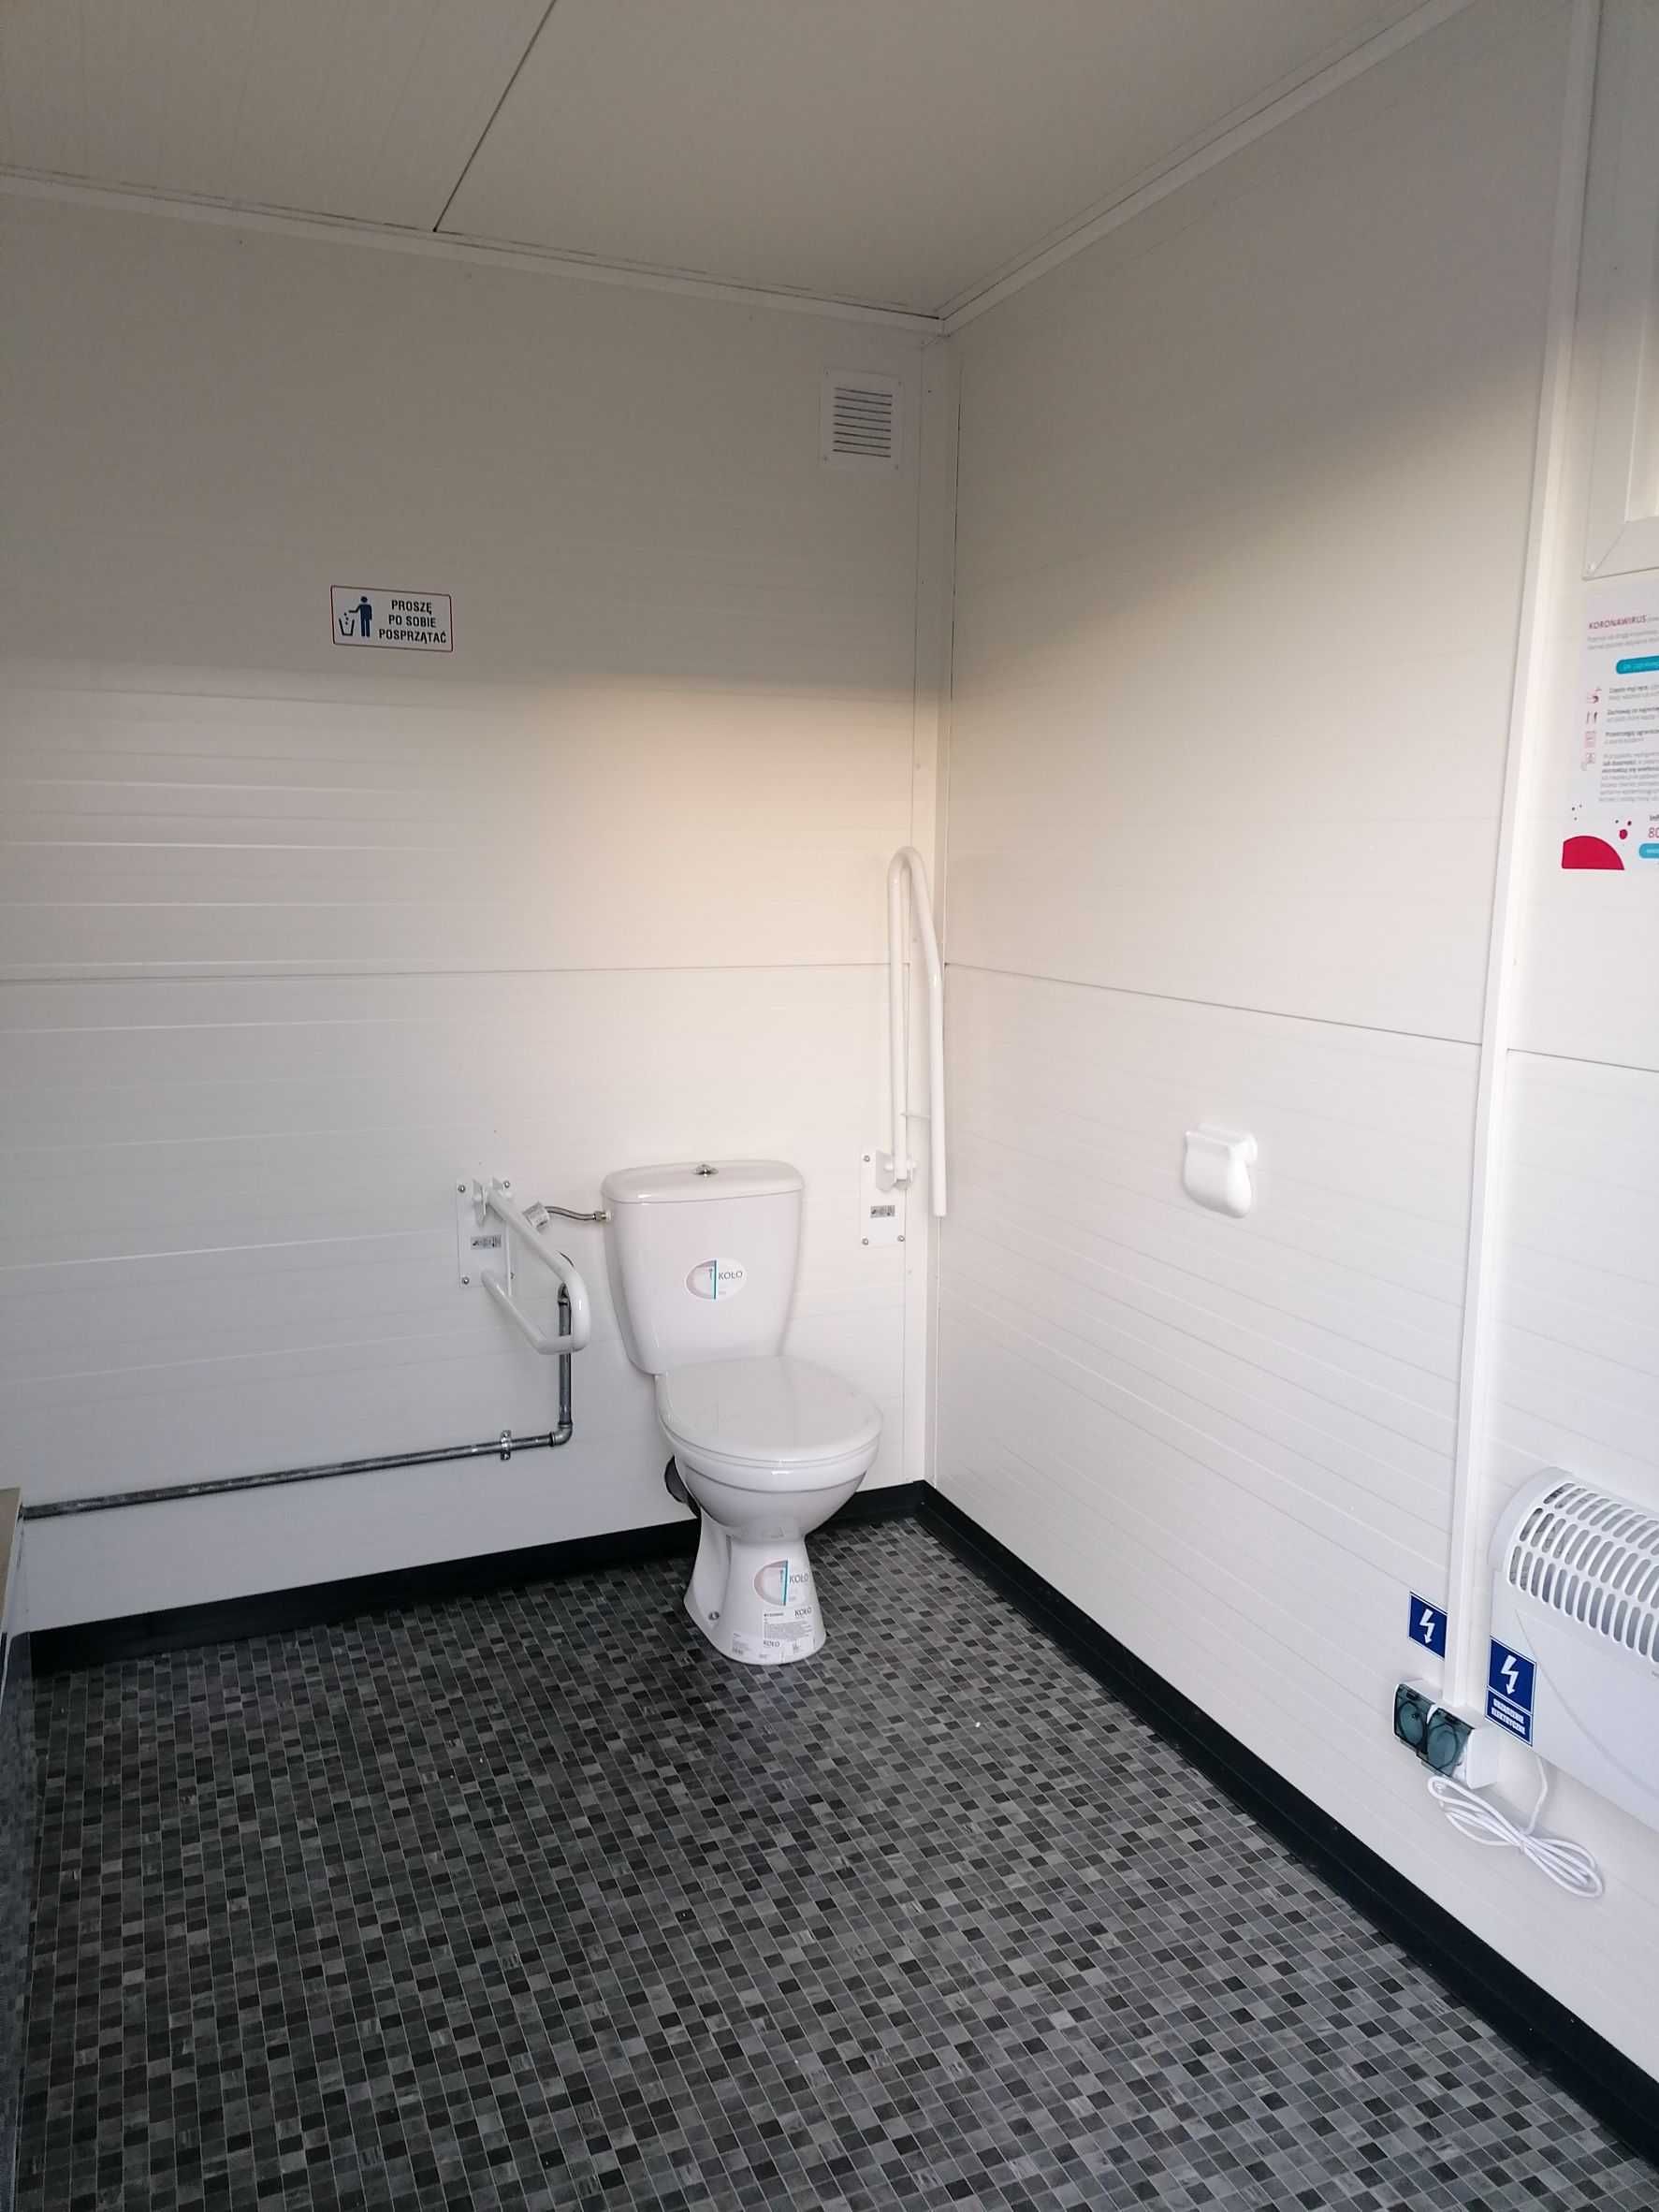 Pawilon kontener Wc łazienka niepełnosprawnych toaleta inwalidów